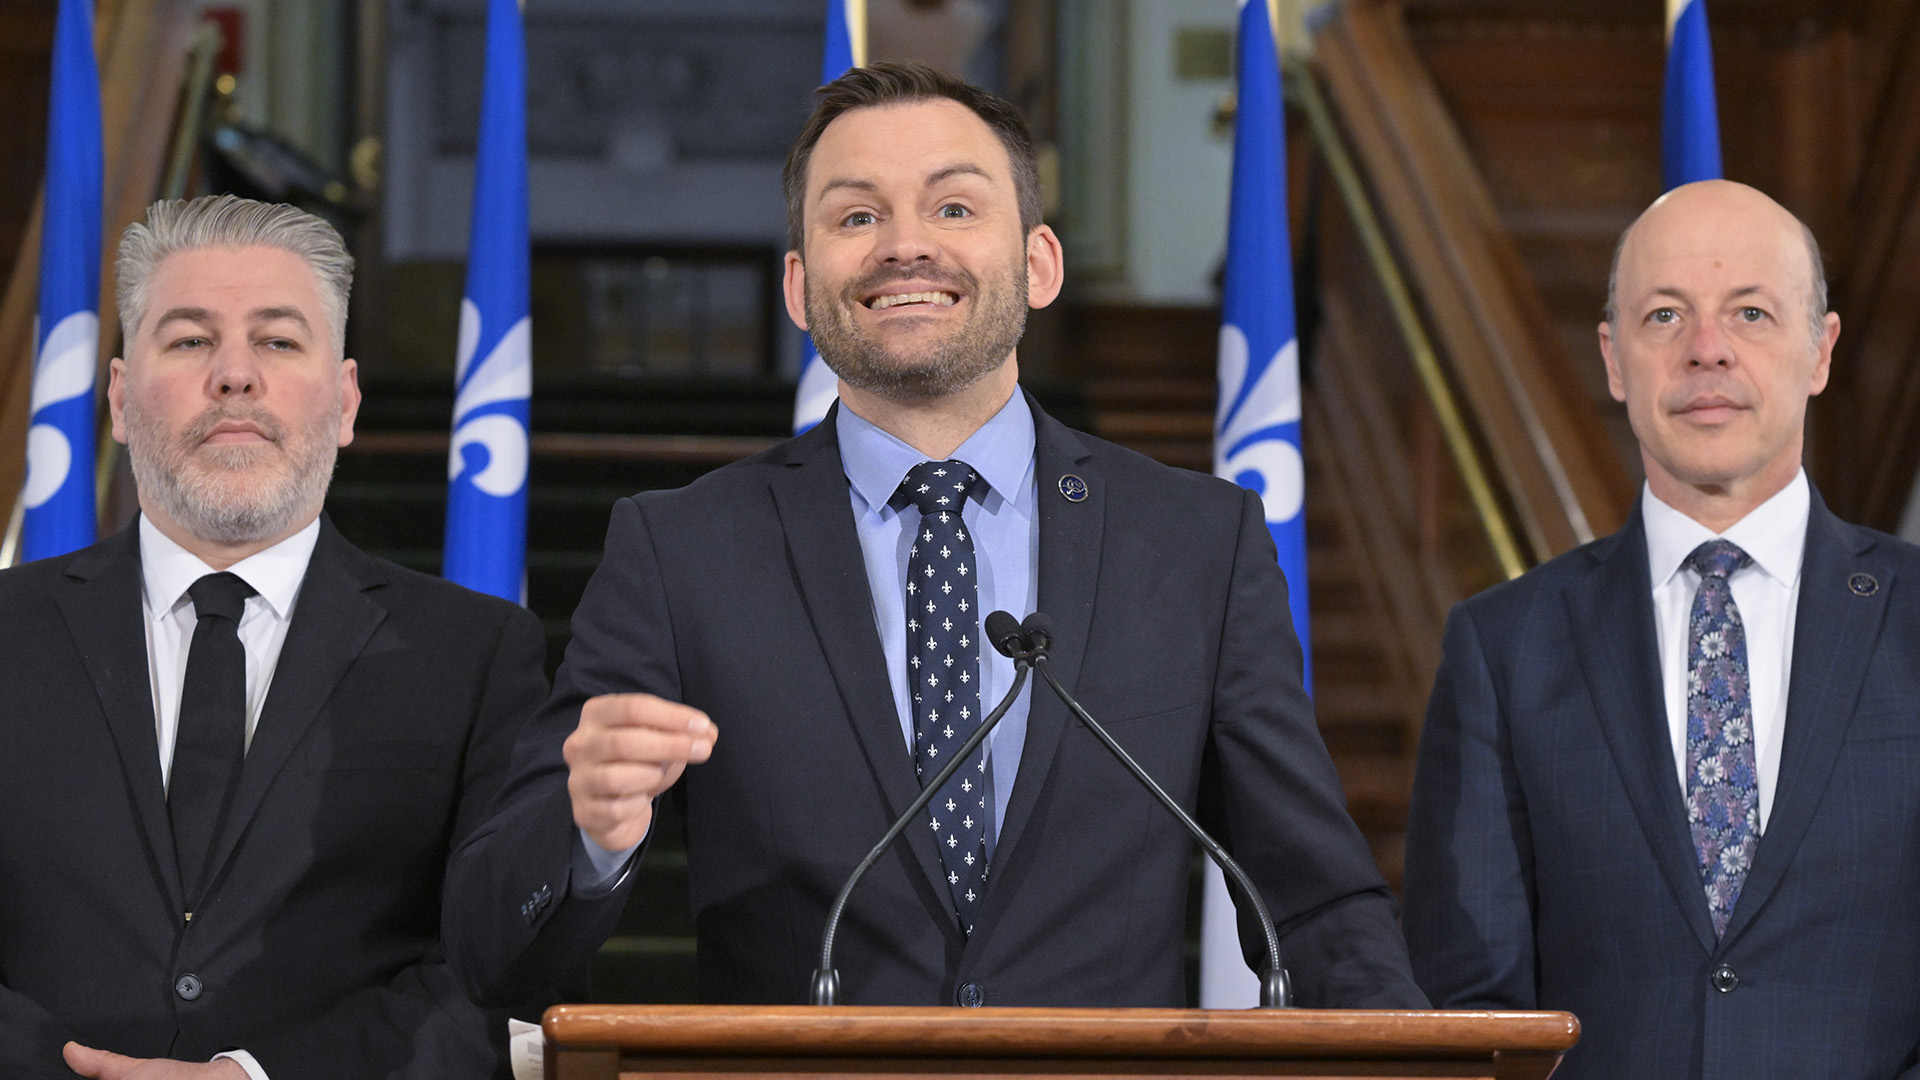 Le chef du Parti québécois, Paul St-Pierre Plamondon, prend la parole lors d'une conférence de presse, le vendredi 9 juin 2023, à l'Assemblée législative de Québec. St-Pierre Plamondon est entouré des députés Pascal Bérubé, à gauche, et Joël Arseneau.